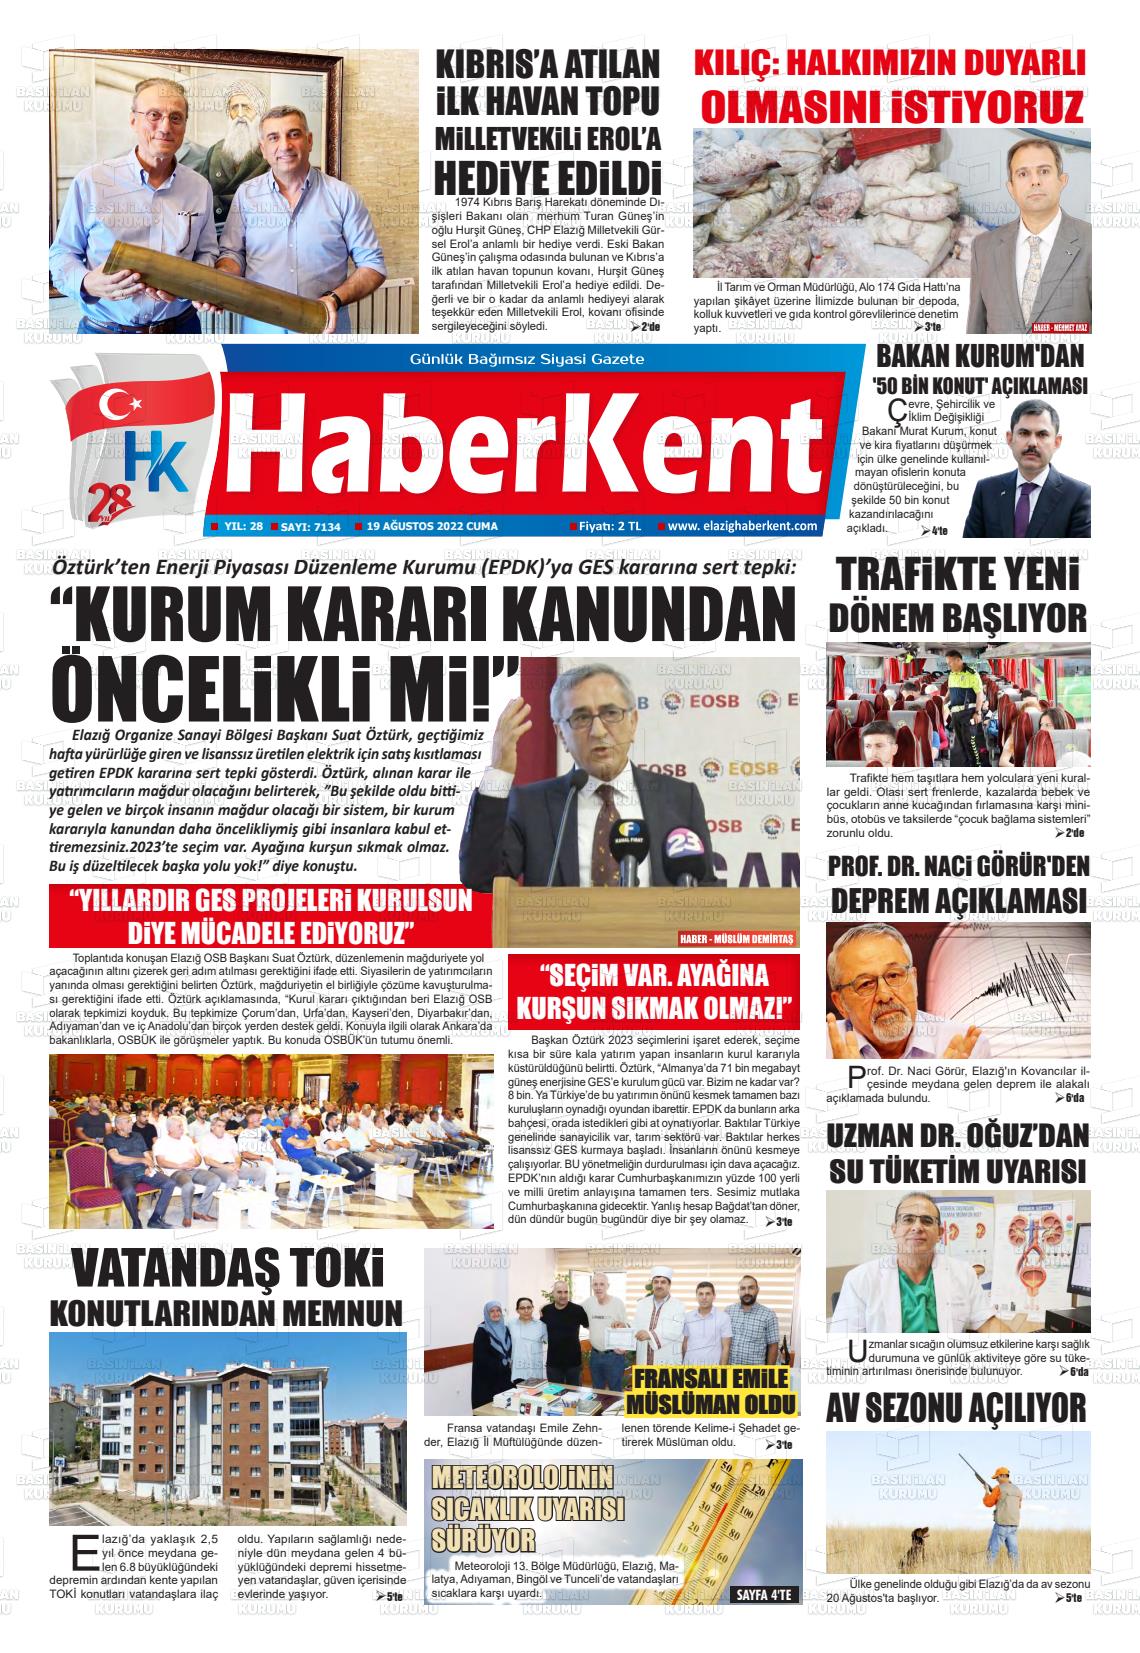 19 Ağustos 2022 Elazığ Haberkent Gazete Manşeti